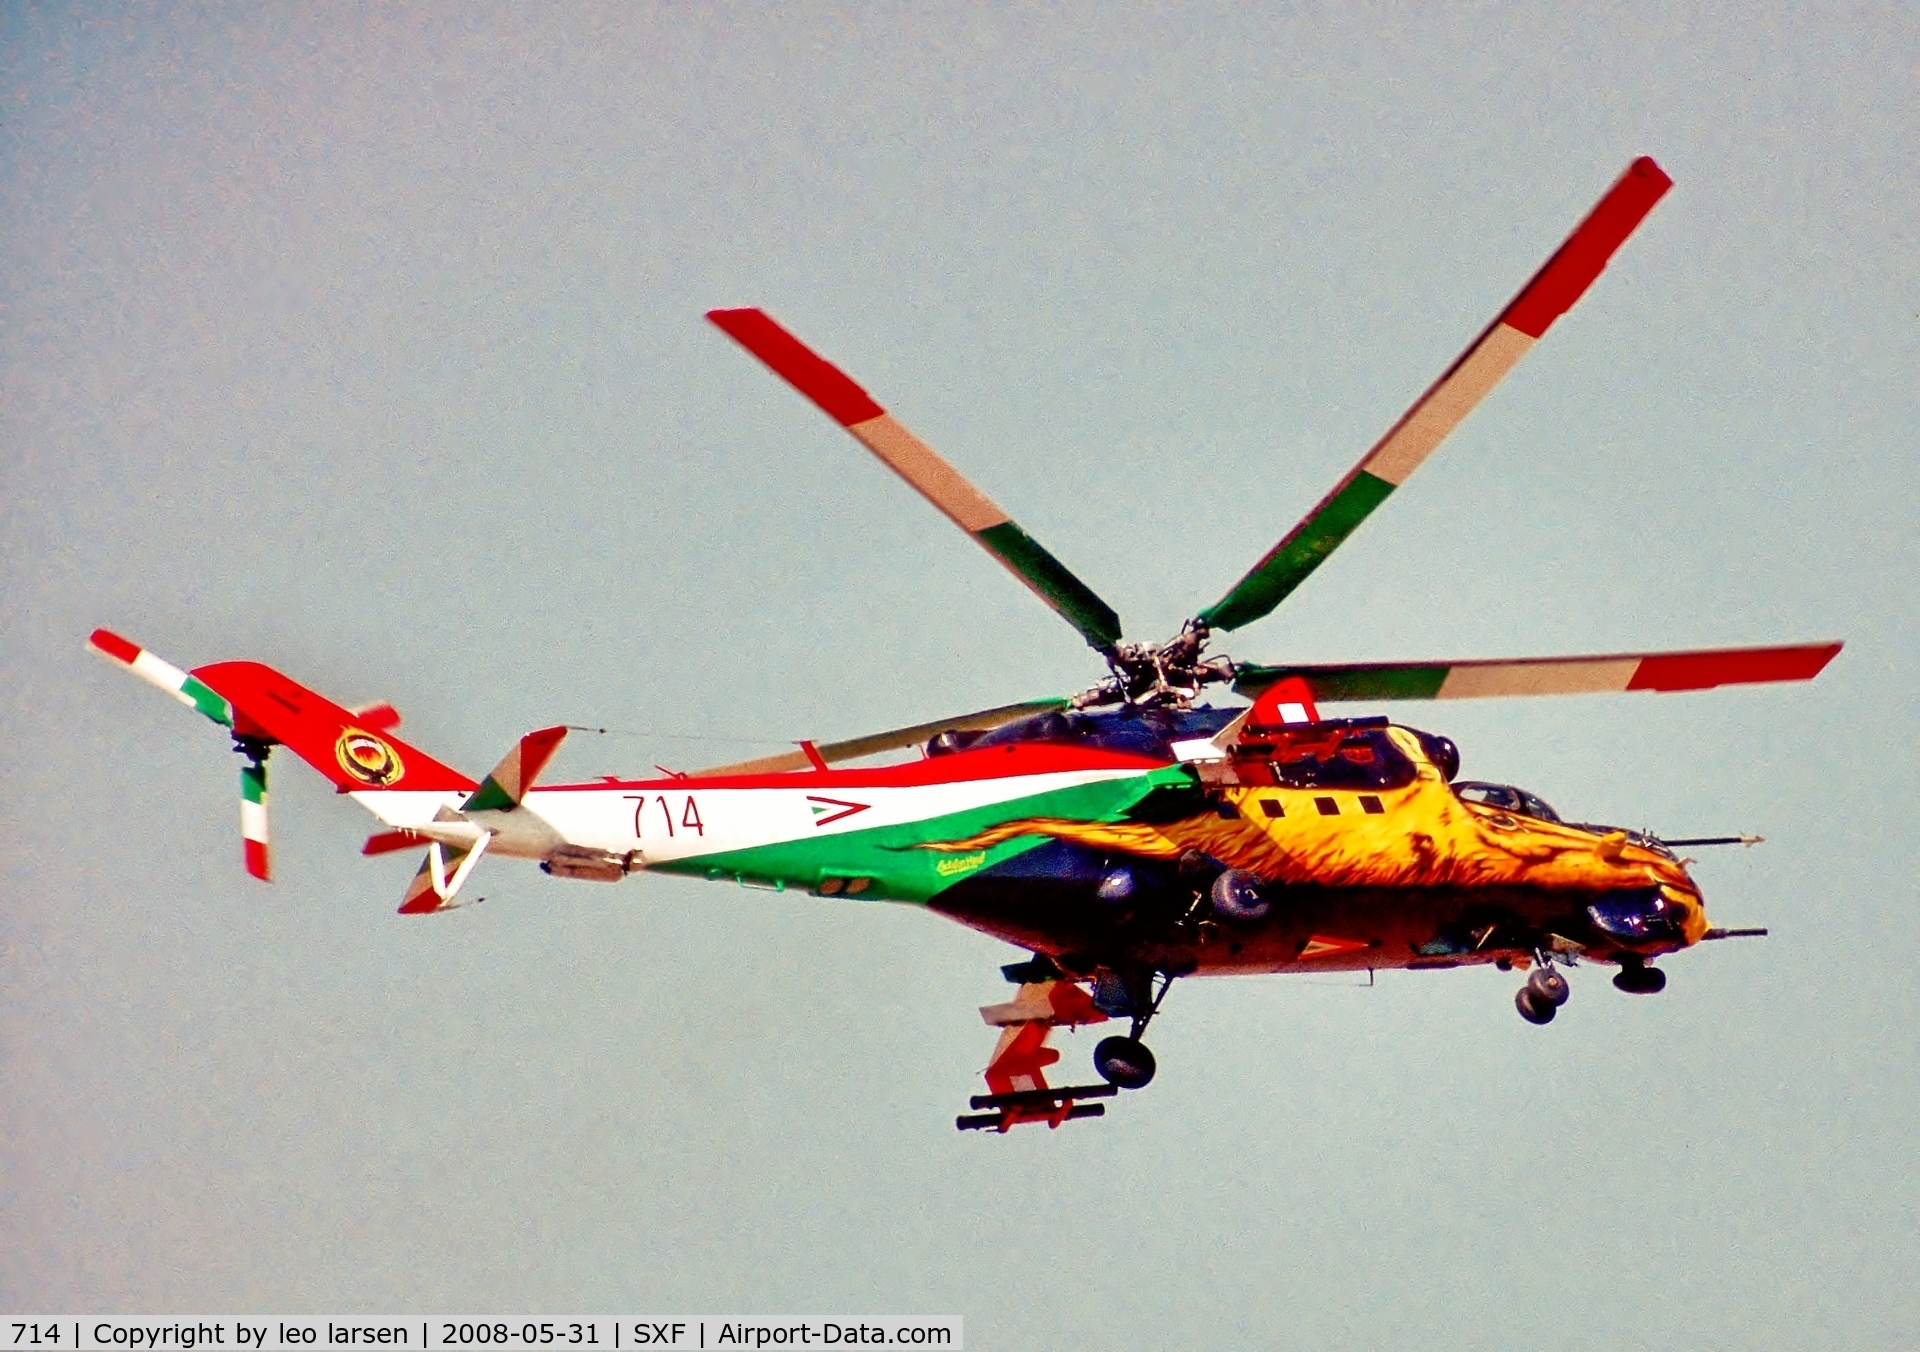 714, 1985 Mil Mi-24V Hind E C/N K220714, Berlin Air Show 31.5.08